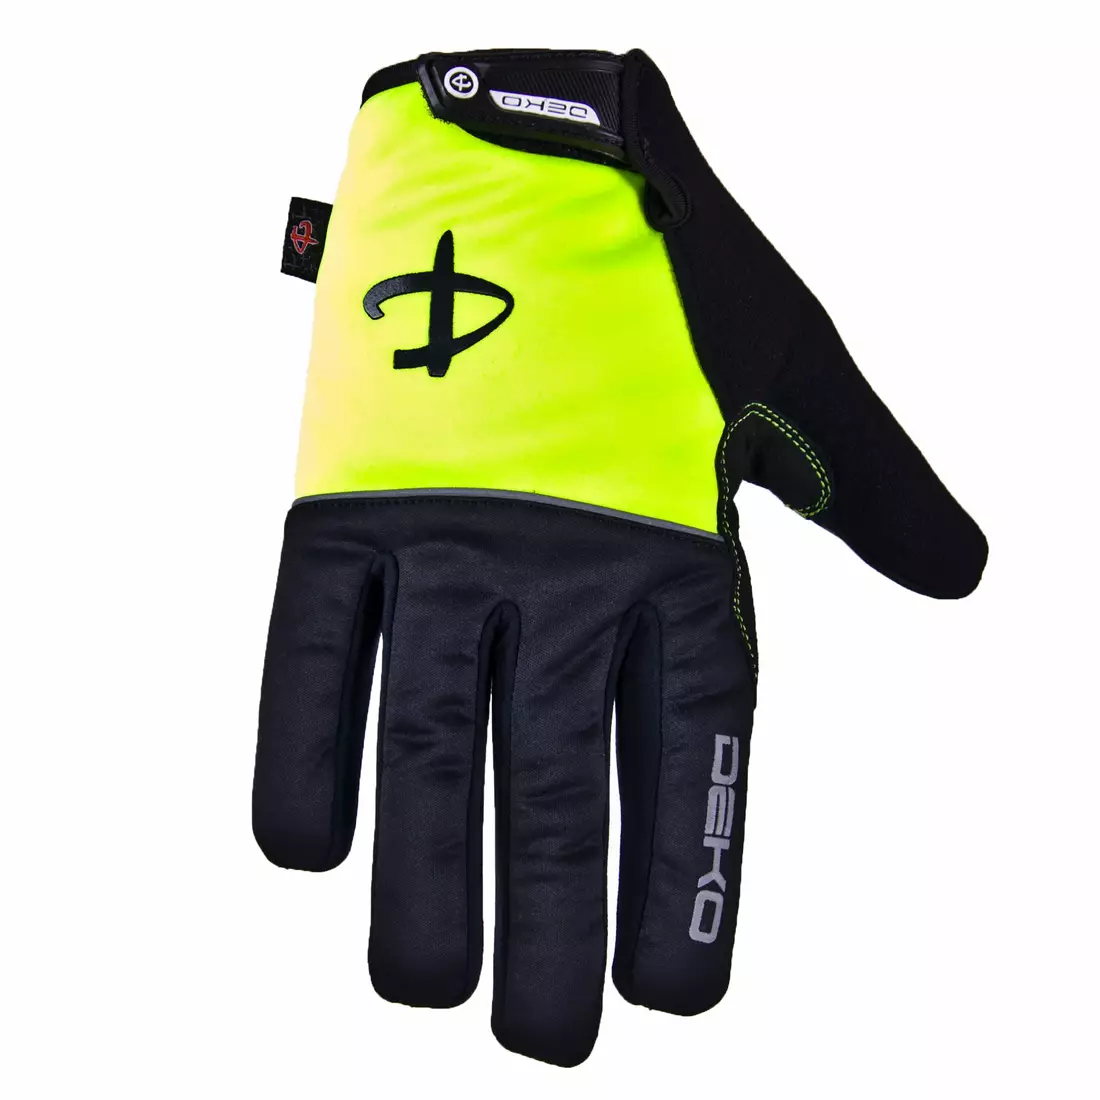 DEKO ROST mănuși de iarnă pentru ciclism negru-galben fluor DKWG-0715-006A